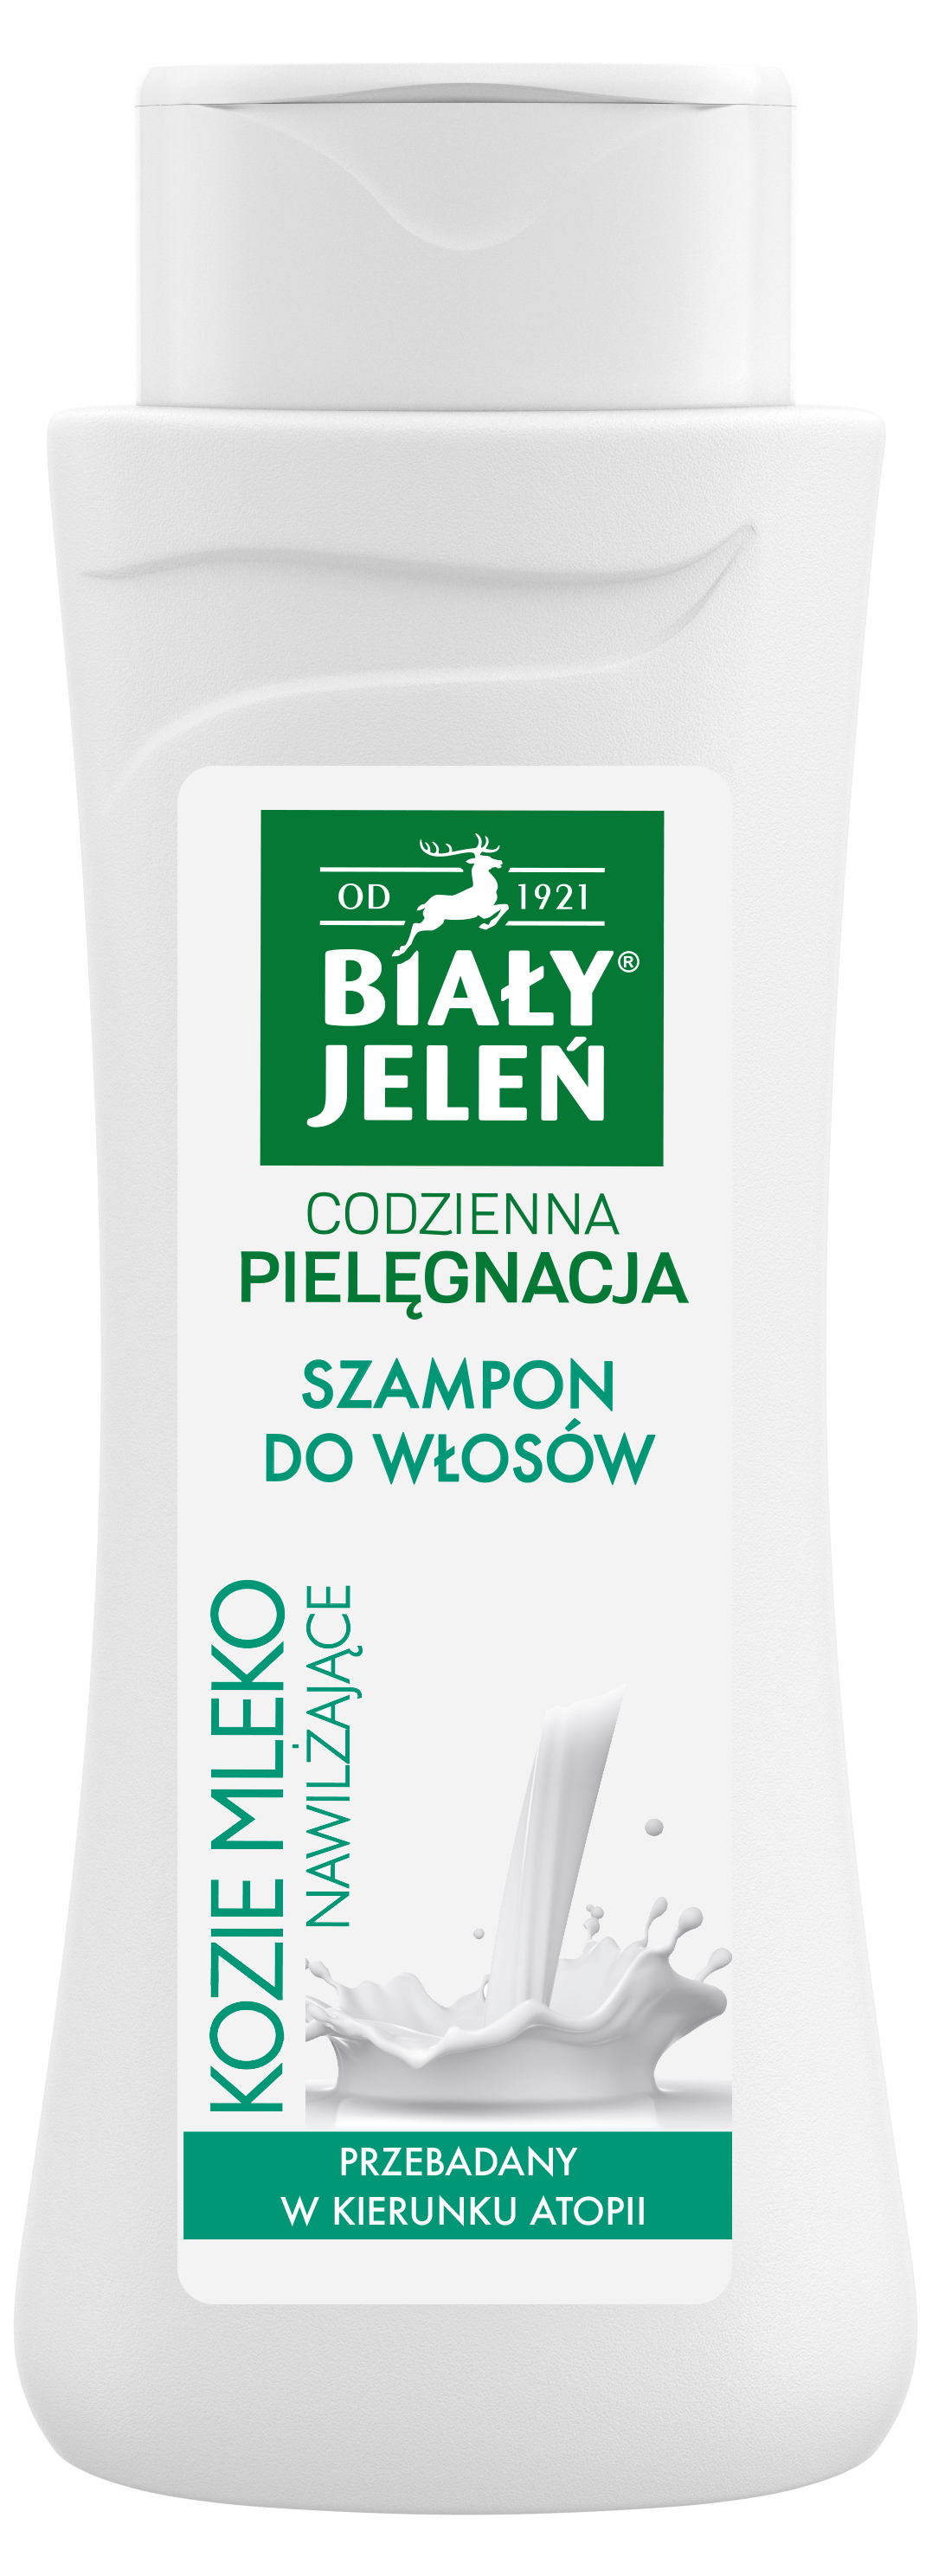 kolagenowy szampon z odżywka wlosy